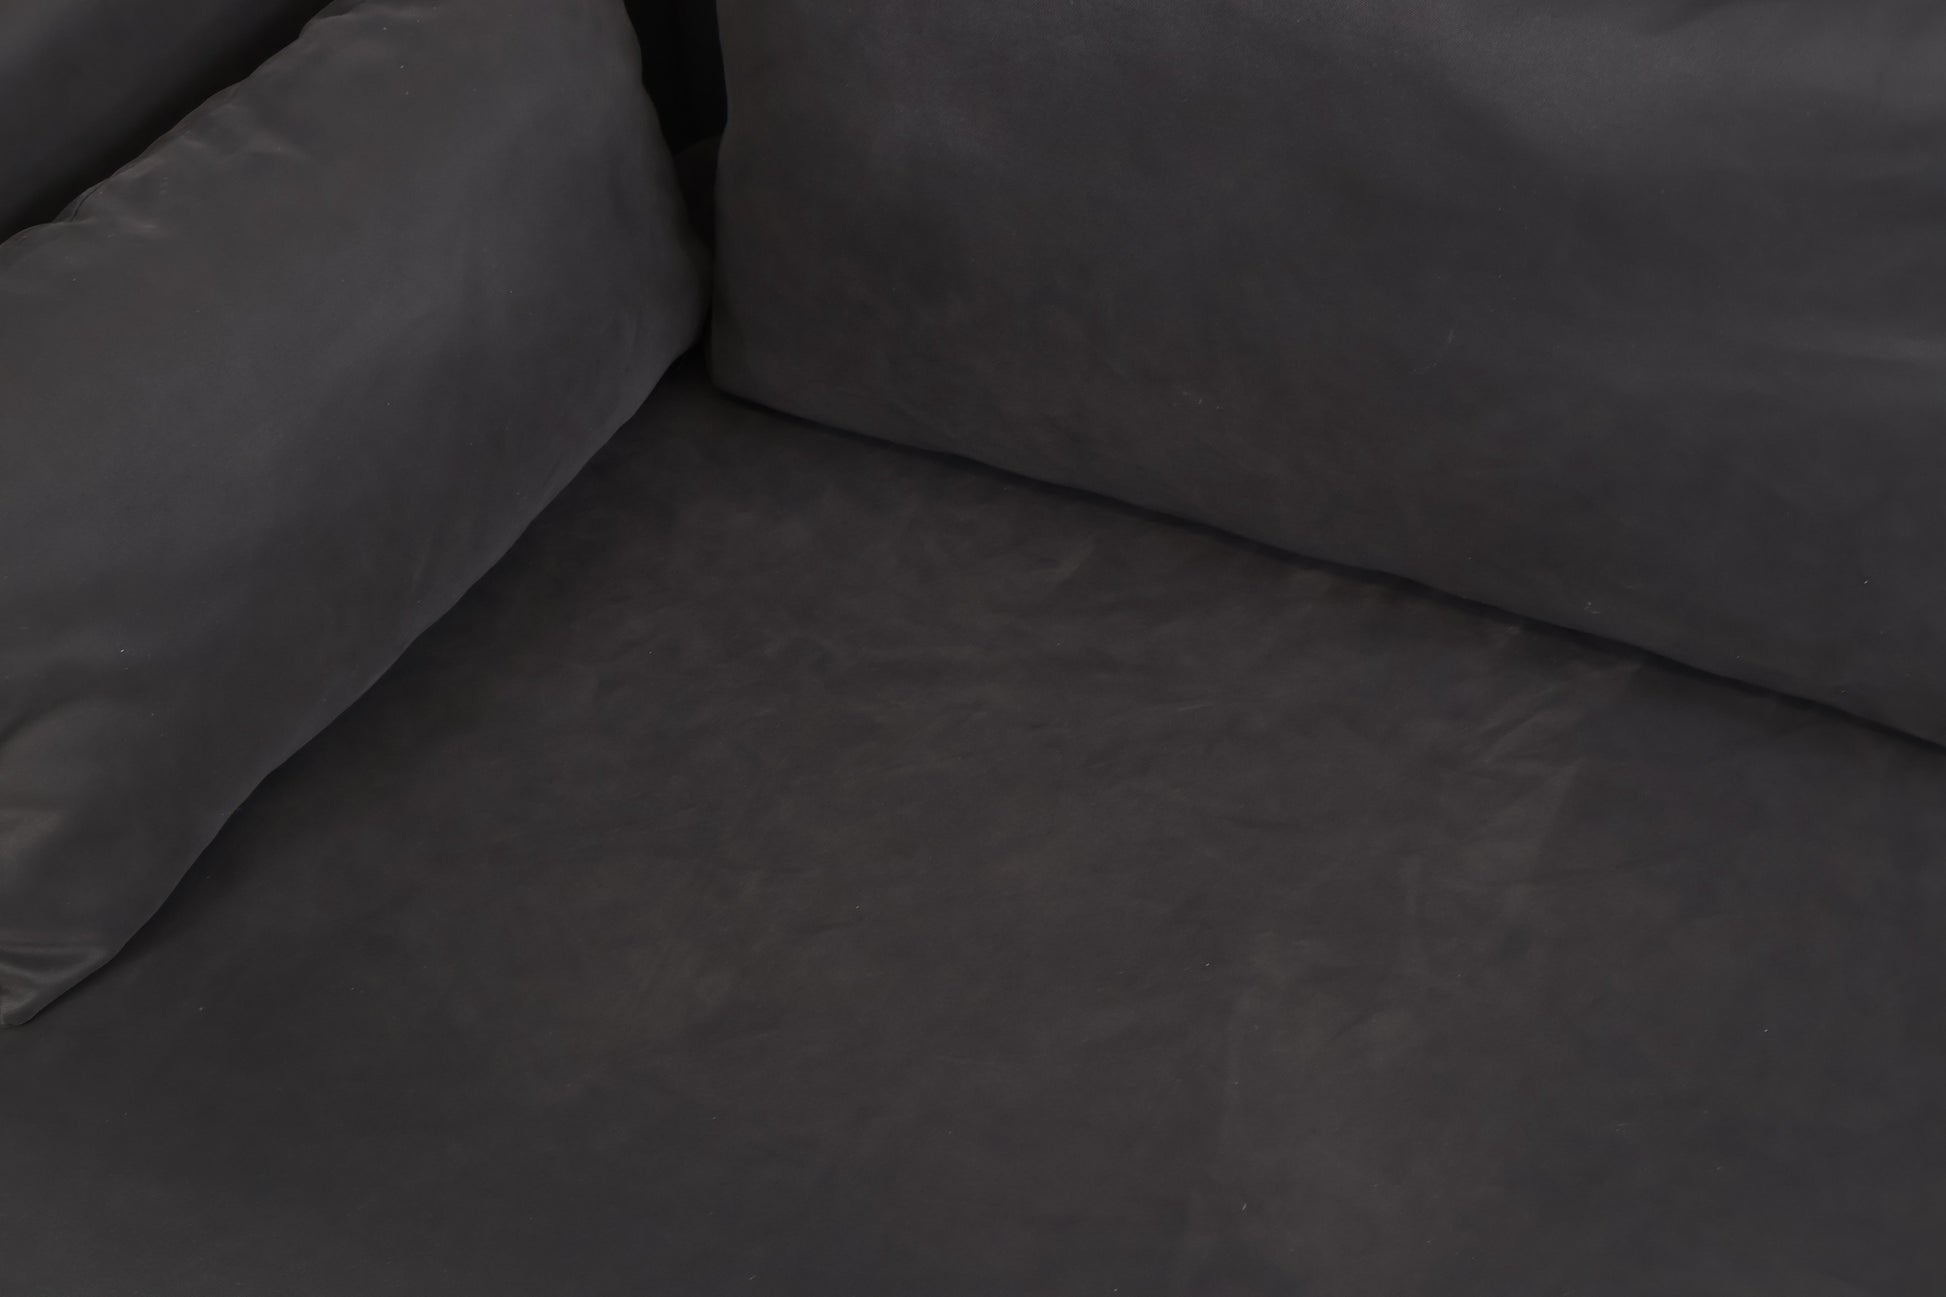 Nyrenset | Mørk grå IKEA Søderhamn 3-seter sofa - Secundo